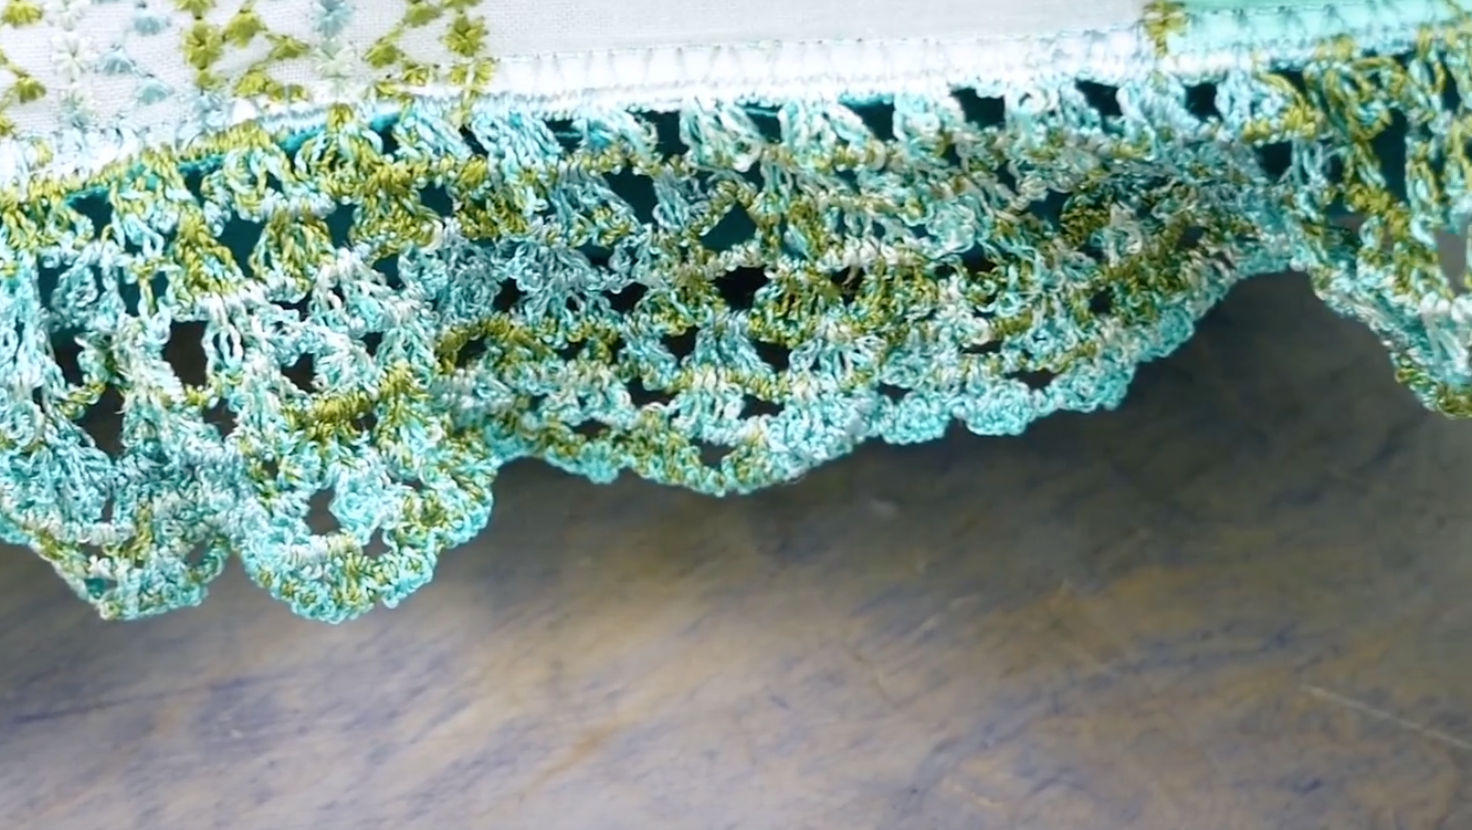 Crochet Machine